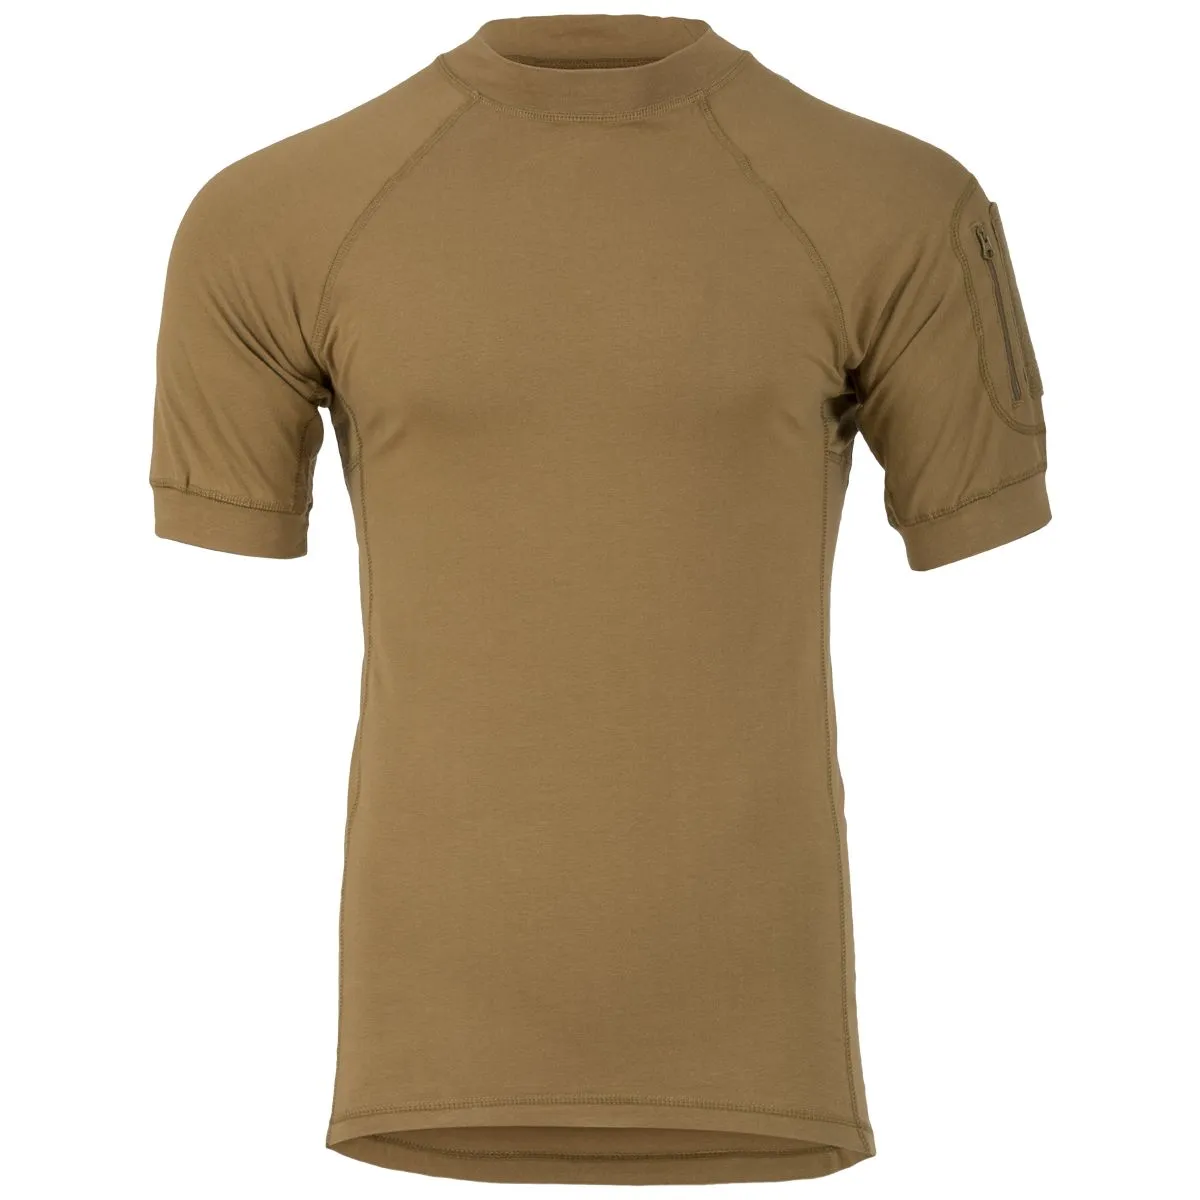 Highlander Forces Tactical Combat T-Shirt- Coyote Tan